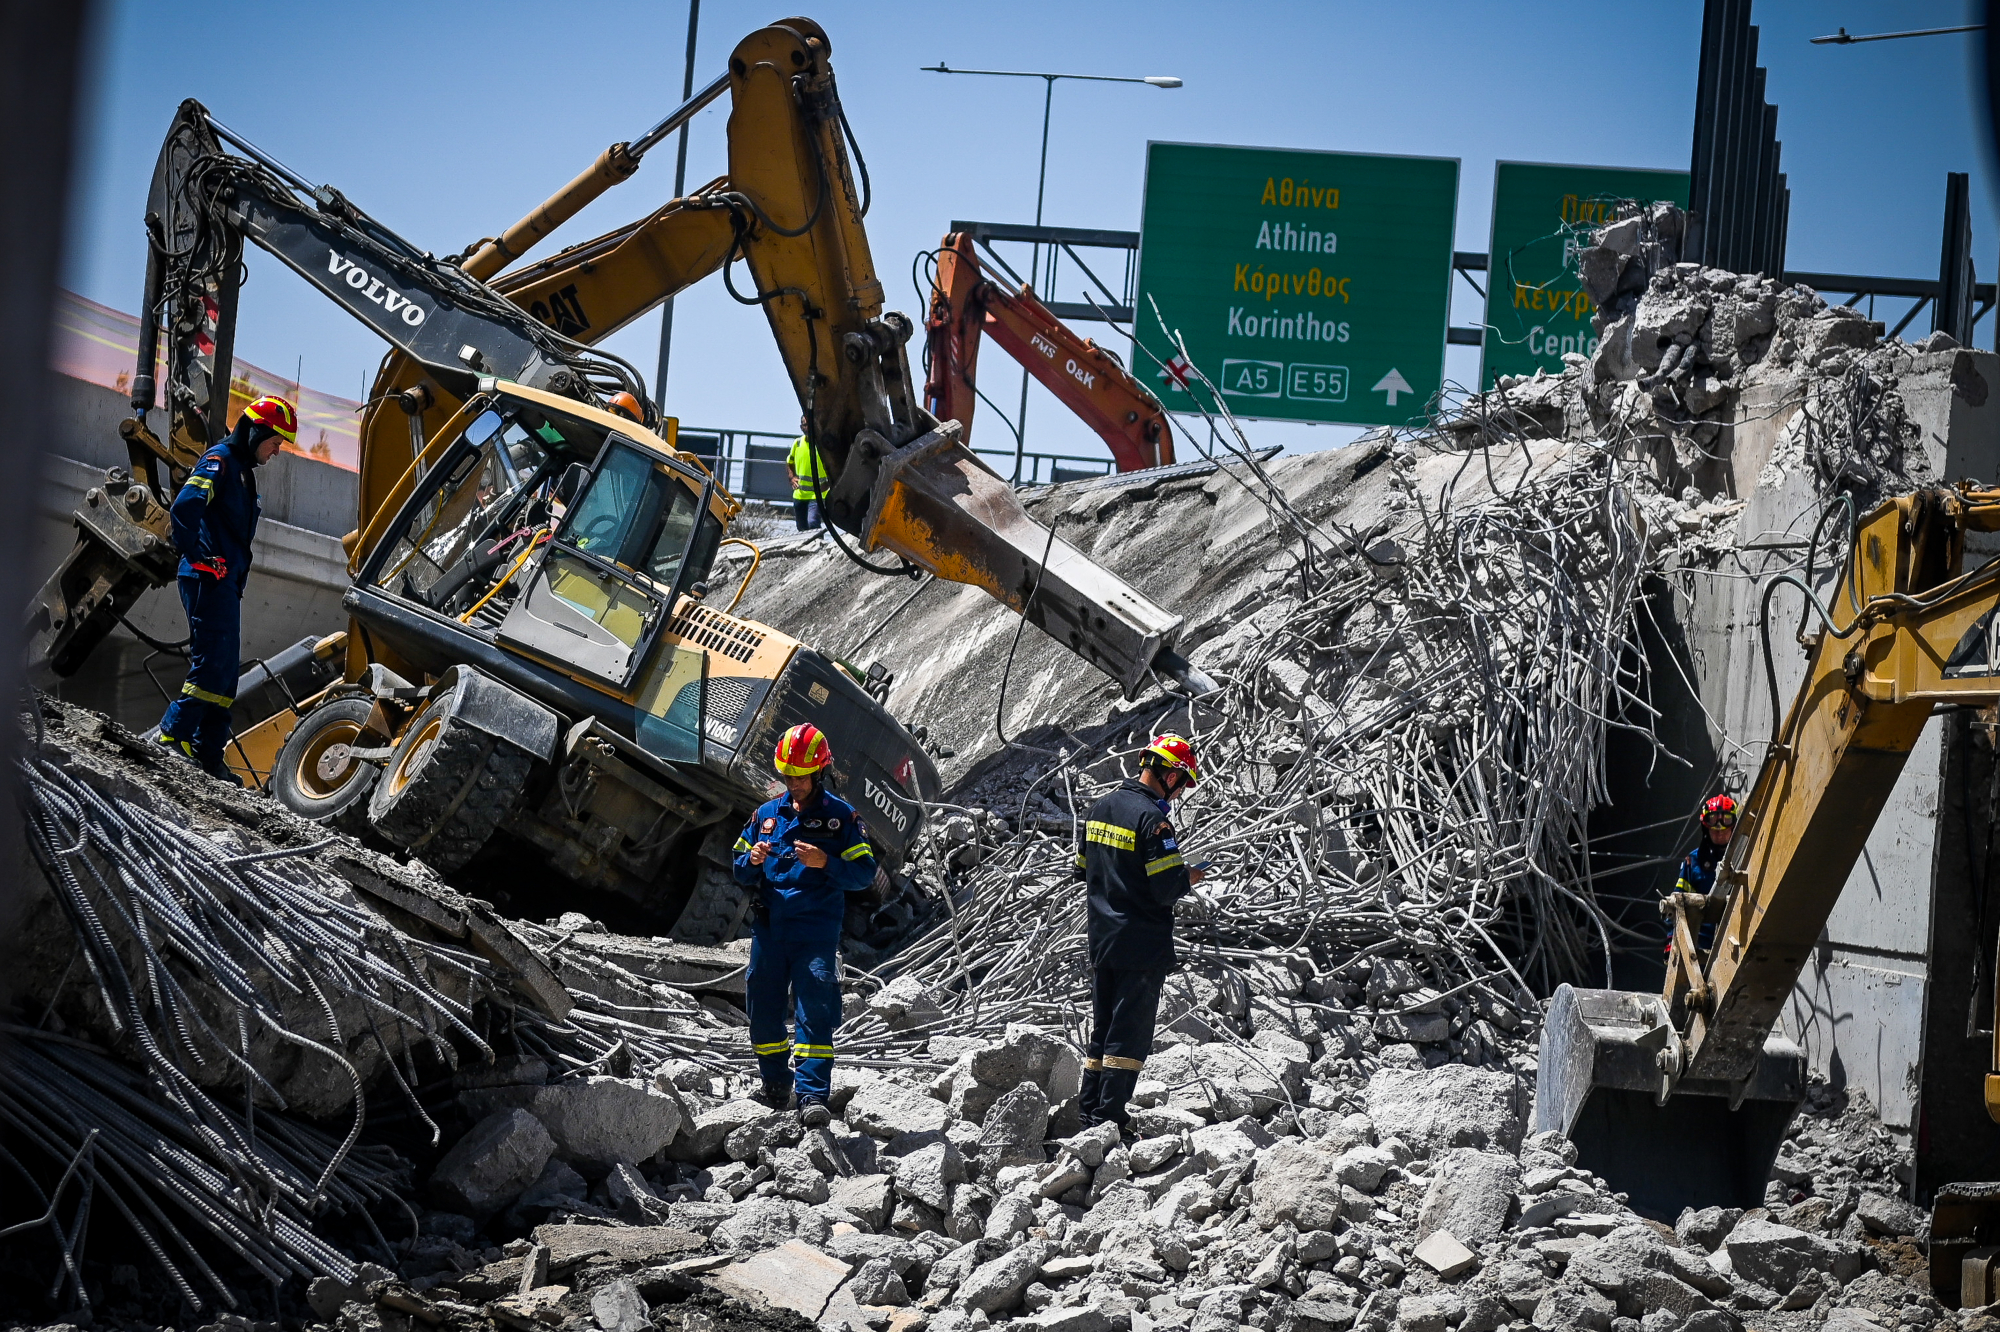 ΓΣΕΕ: Τα δυστυχήματα σε Πάτρα και Χαλκίδα τραγική εικόνα μιας ασύδοτης και παραβατικής αγοράς εργασίας